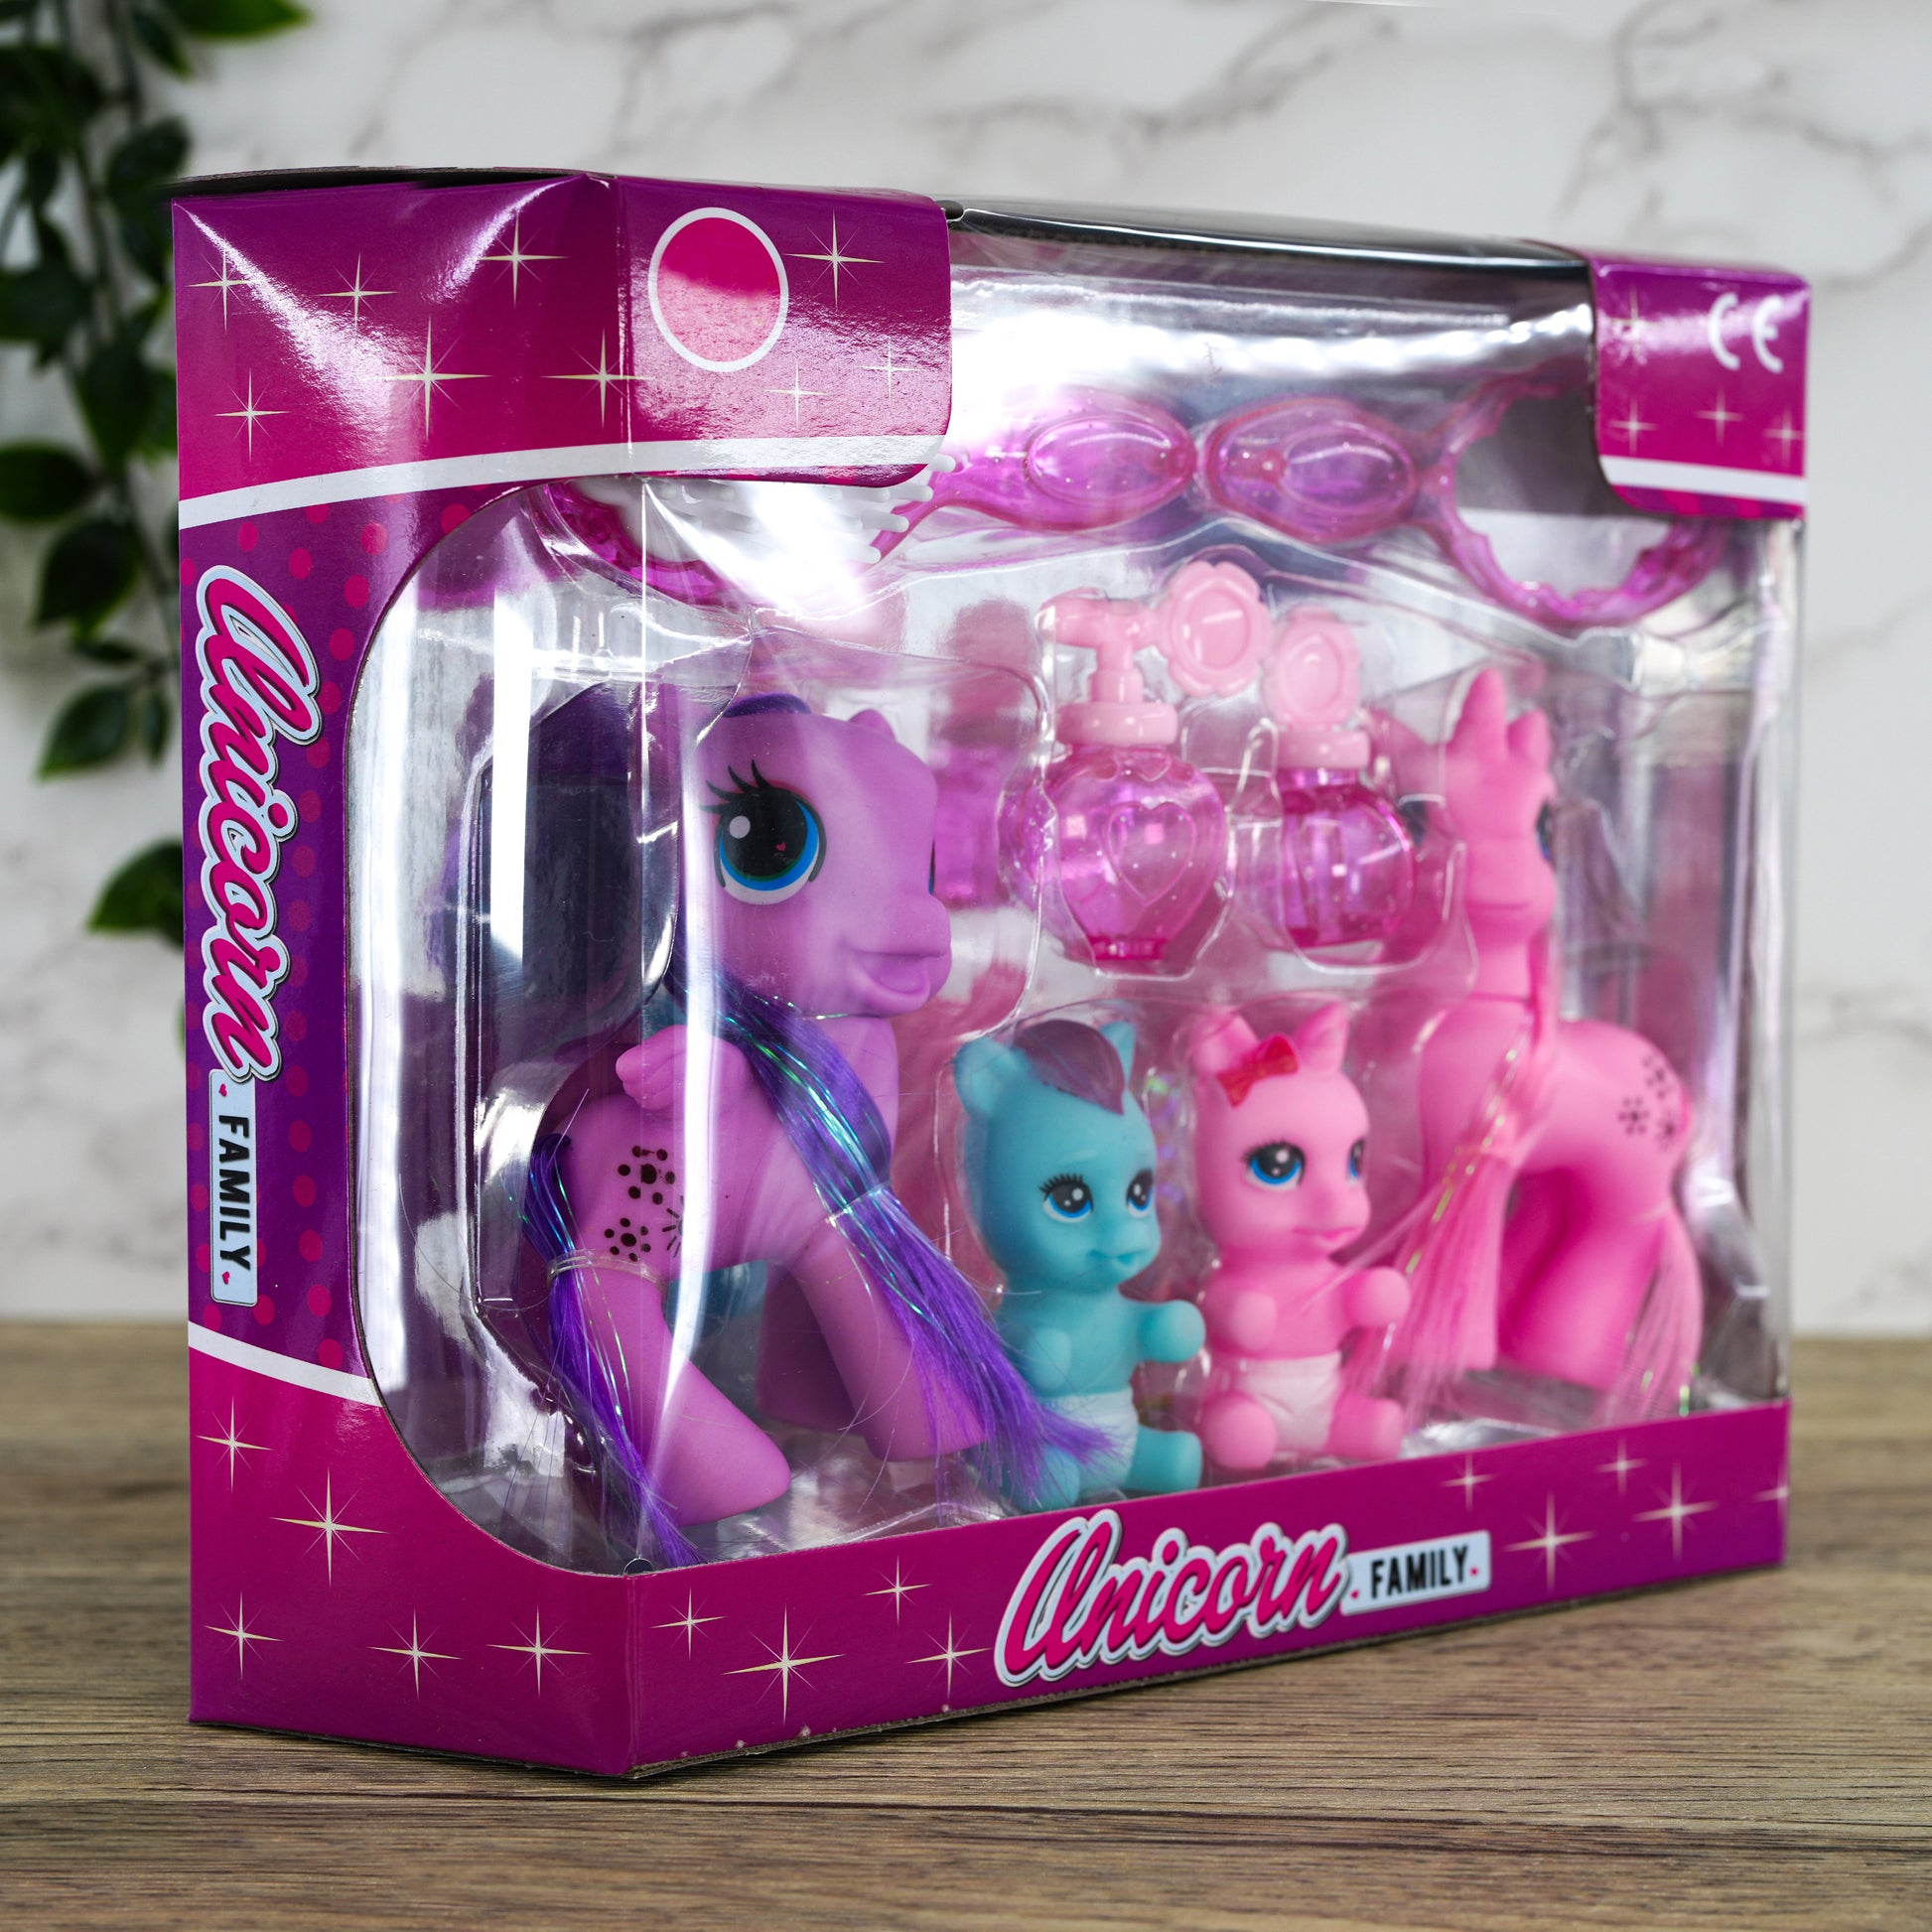 Unicorn Family Playset by The Magic Toy Shop - UKBuyZone